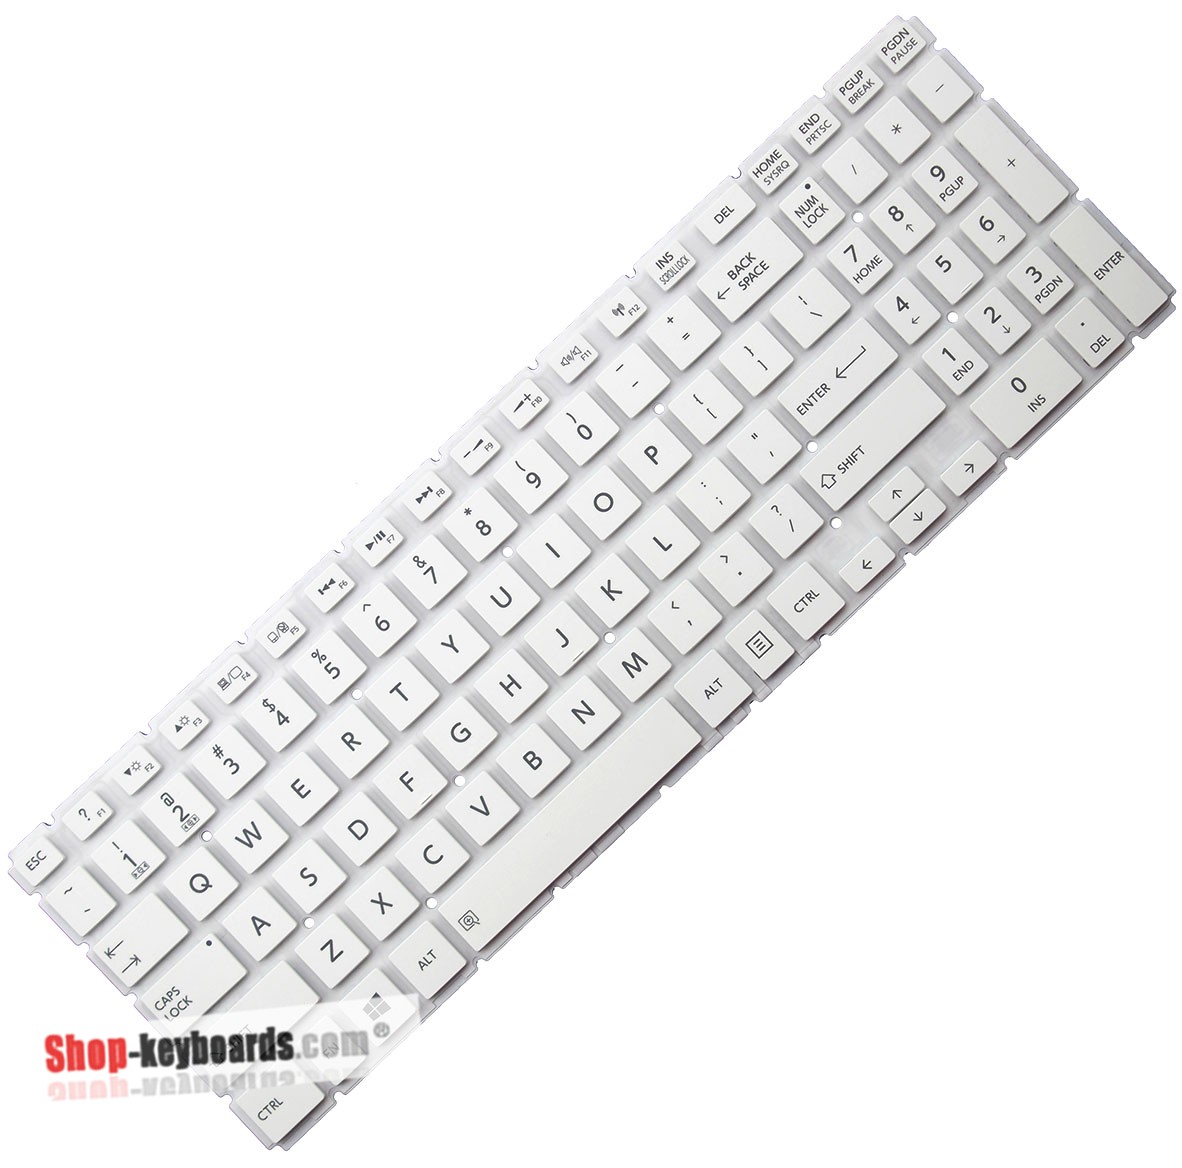 Toshiba SATELLITE C55-C-10K  Keyboard replacement